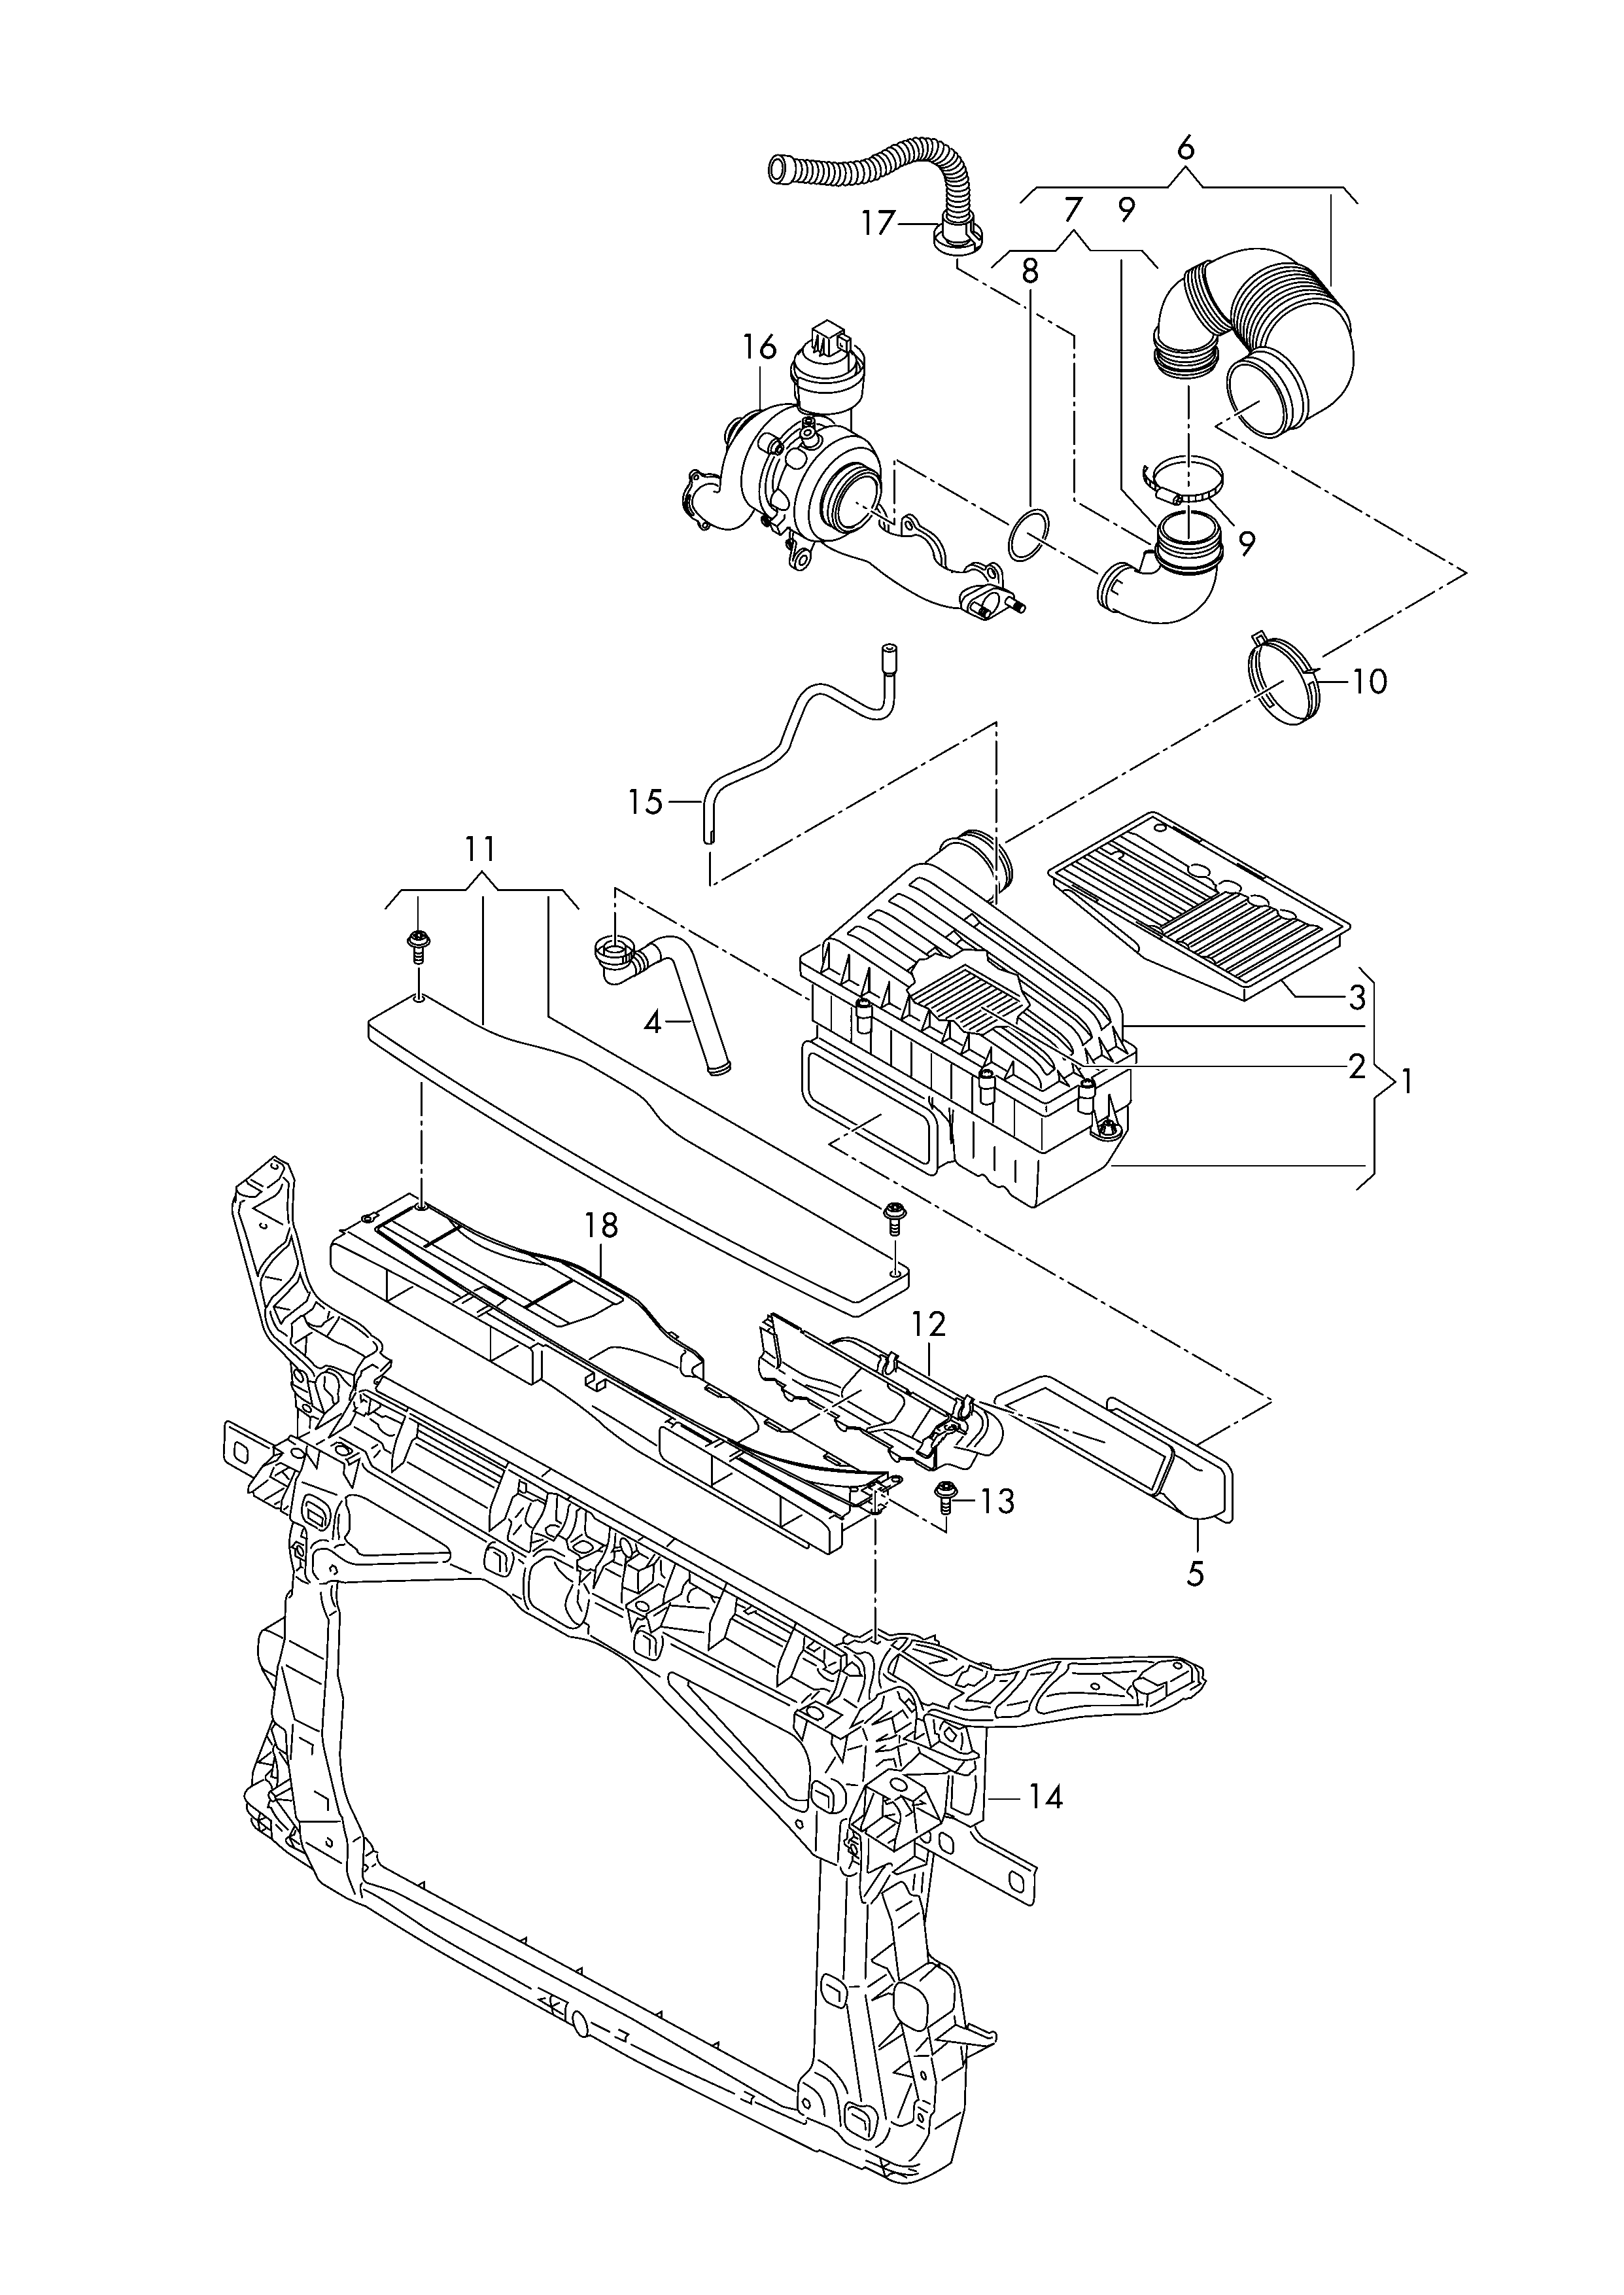 Luftfilter mit Anschluss-
teilen - Octavia(OCT)  